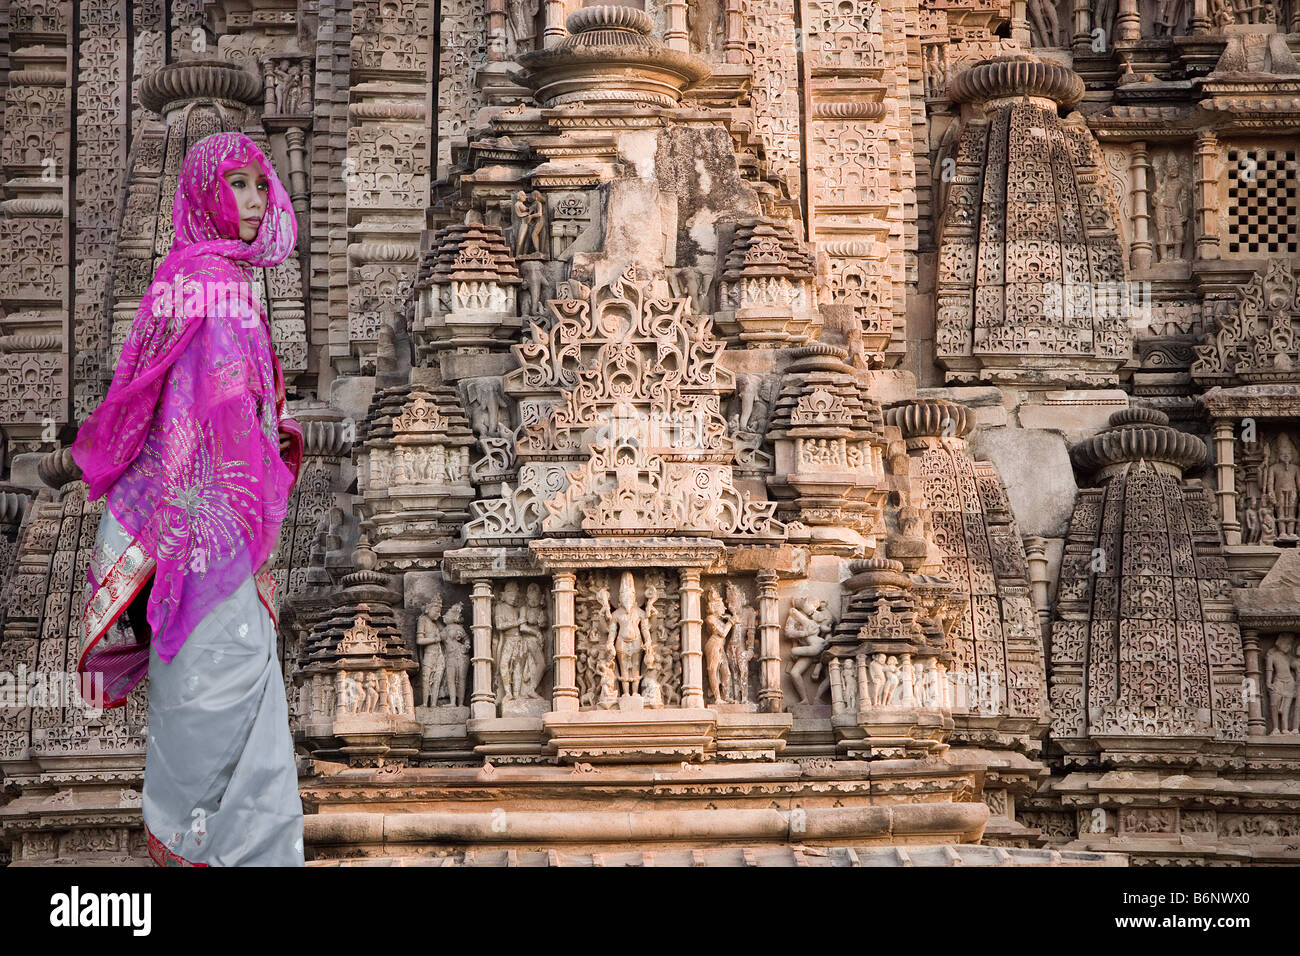 Indian woman at the ruins of Khajuraho, Madhya Pradesh, India Stock Photo